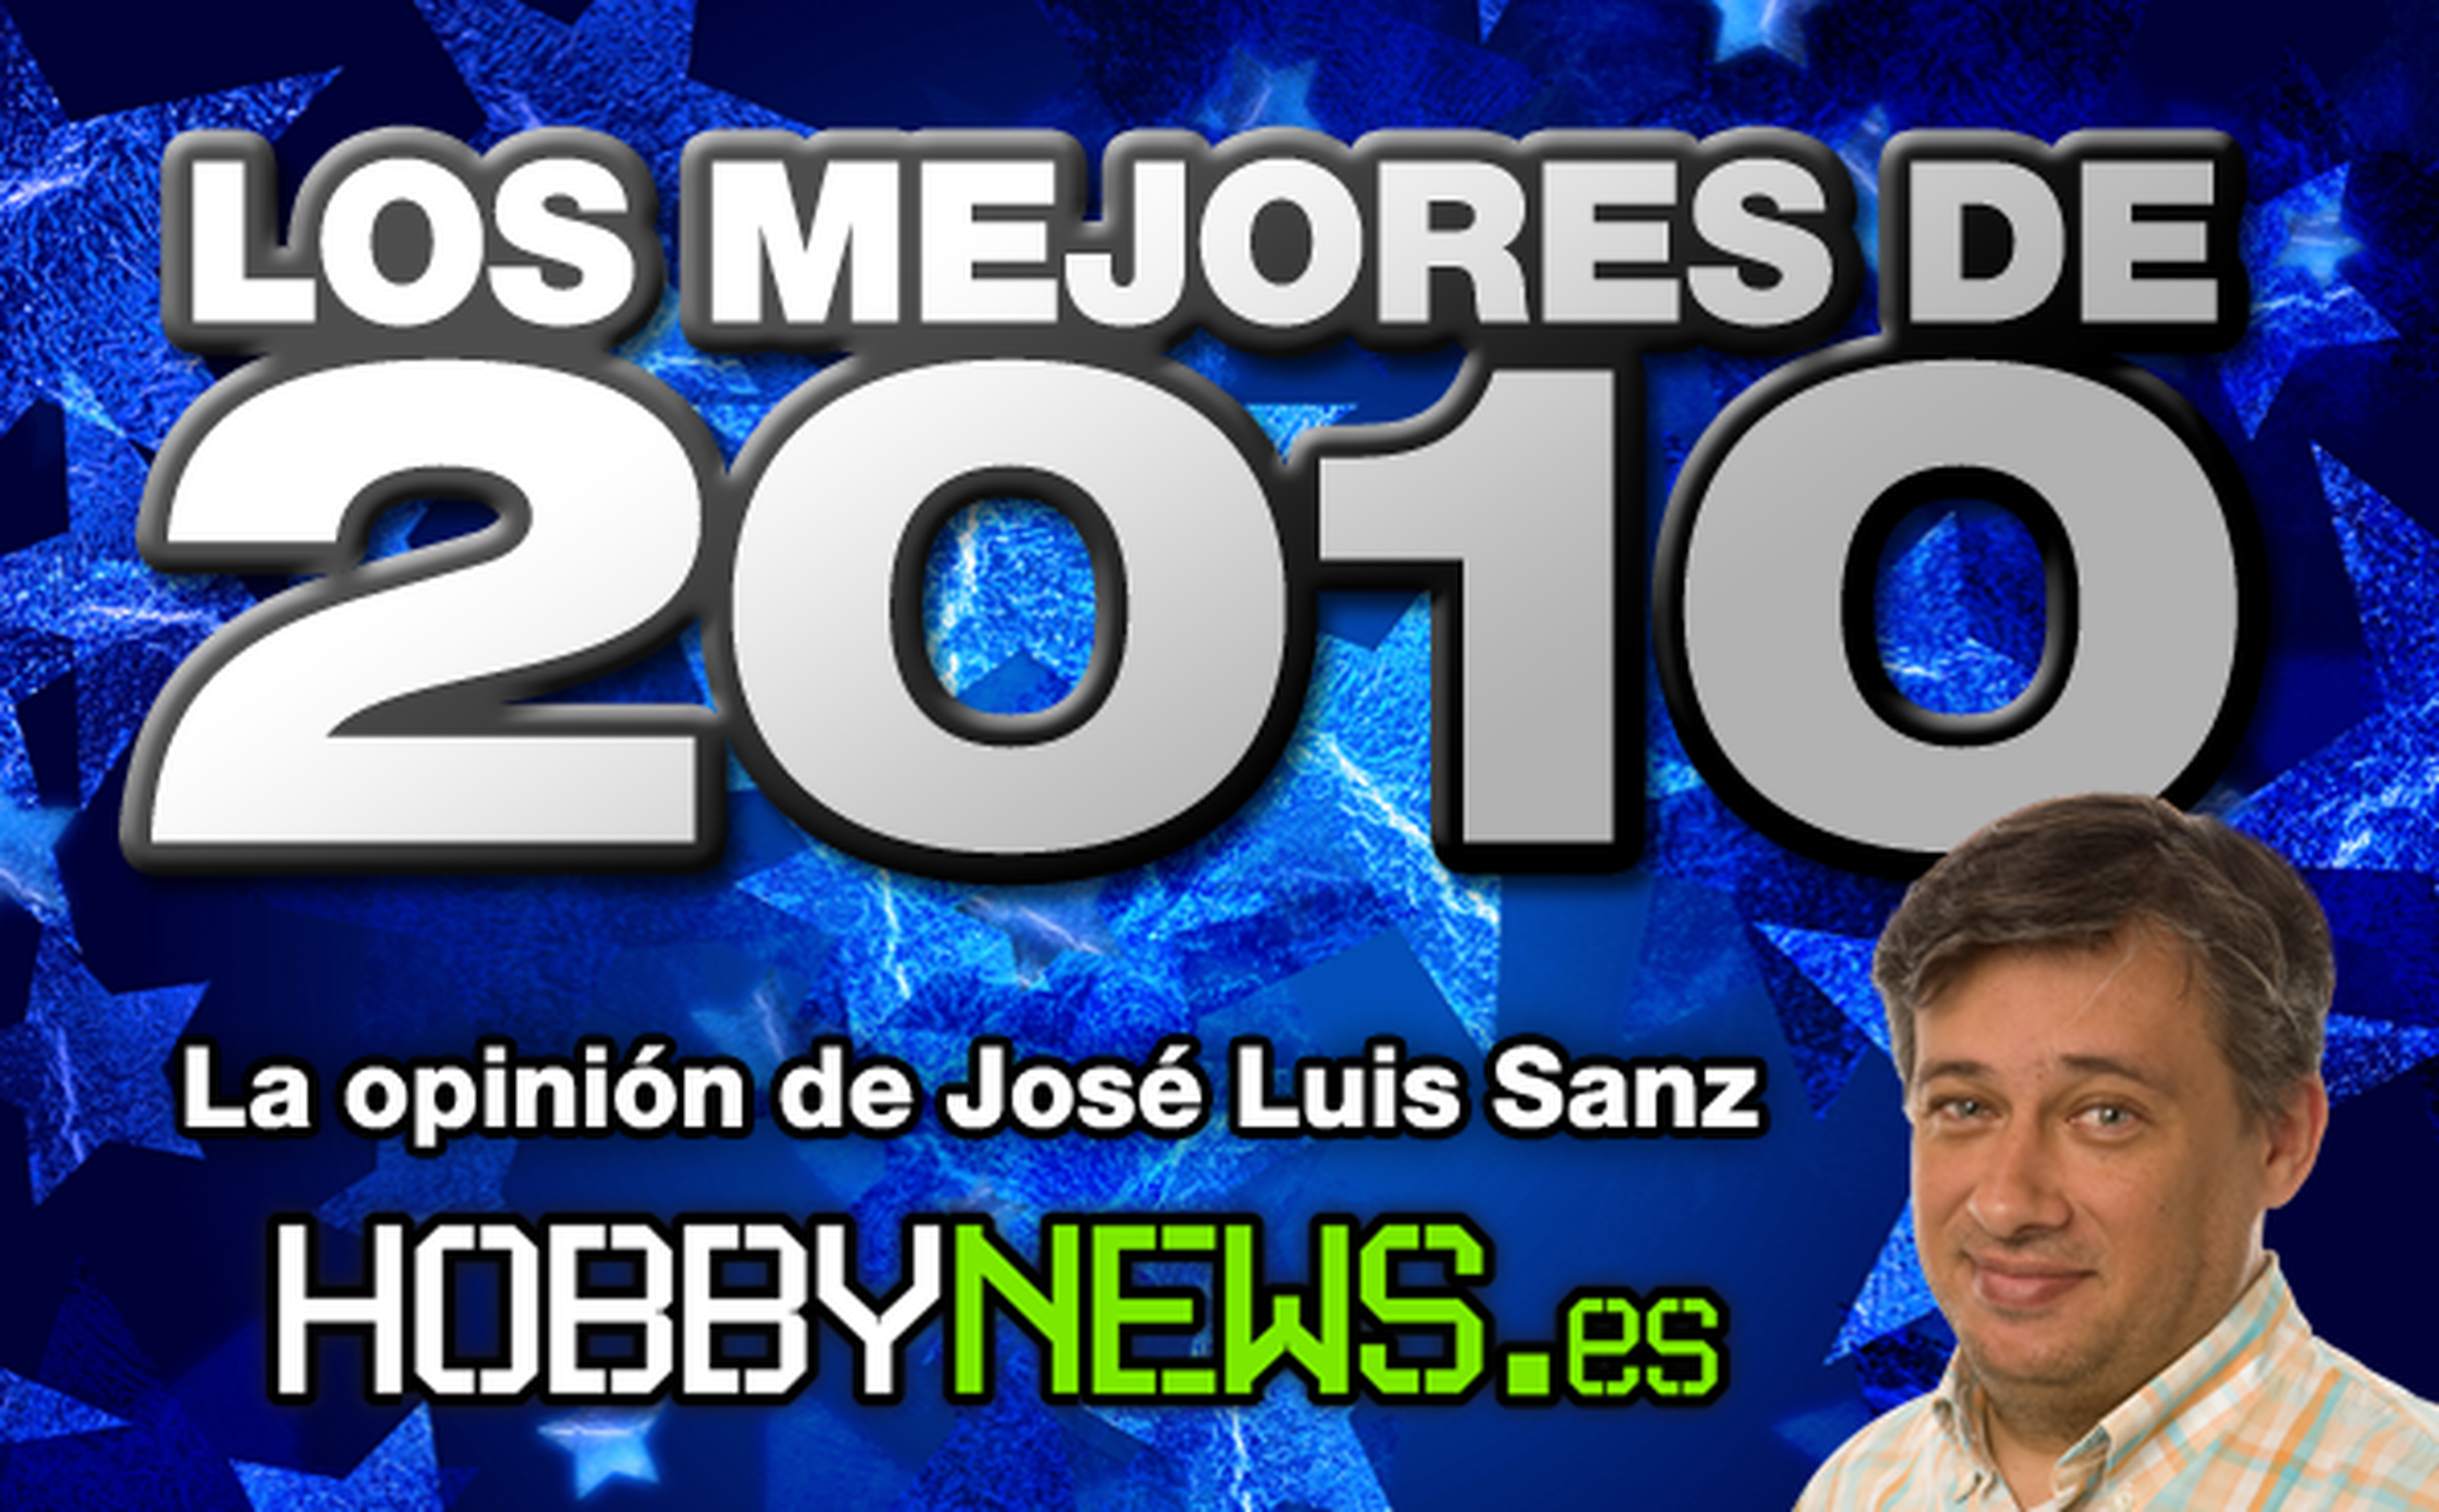 Los mejores de 2010: José Luis Sanz